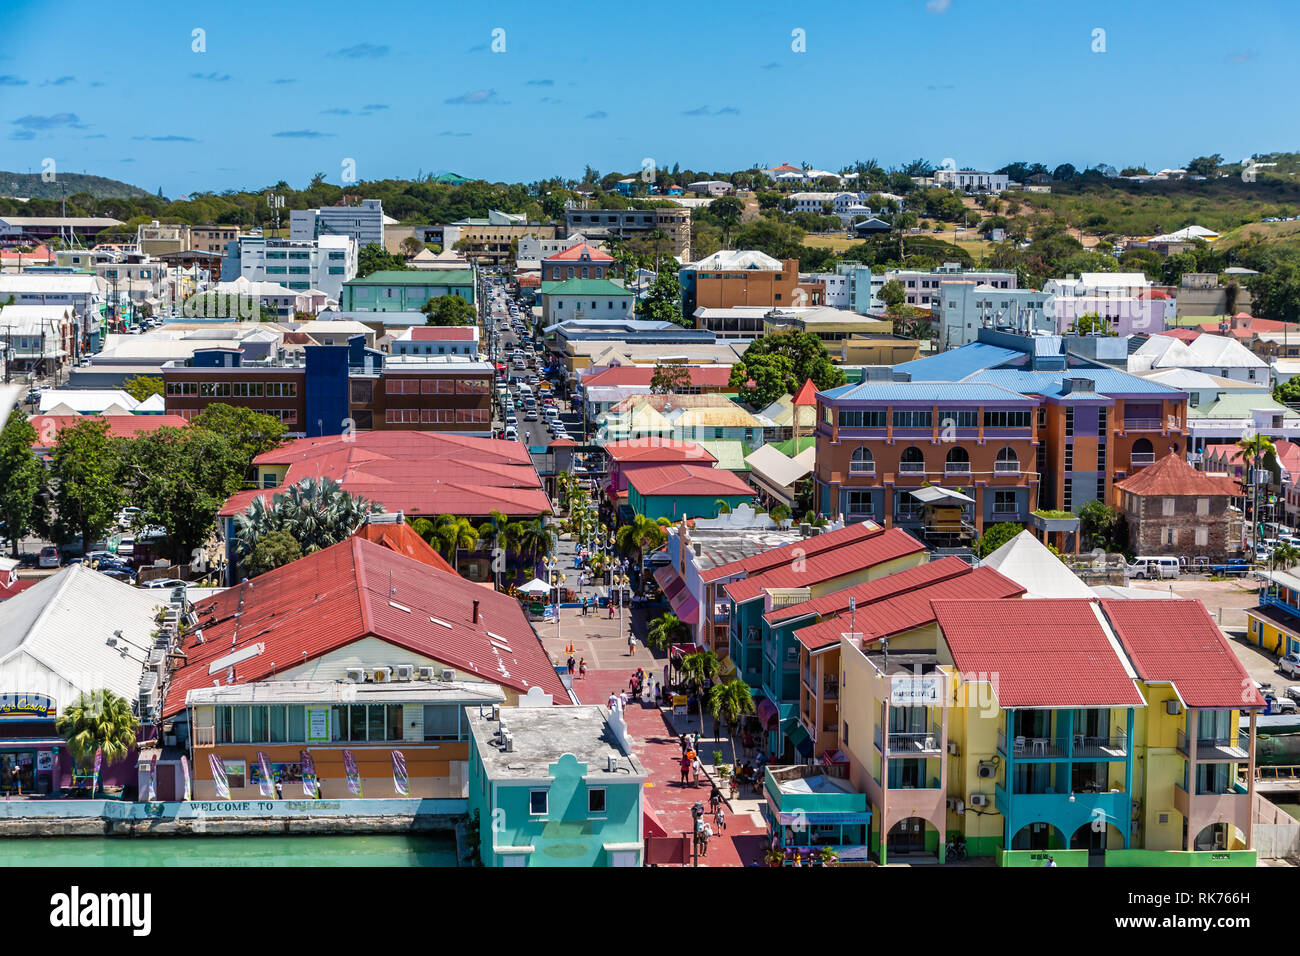 ANTIGUA, ANTILLES - mars 1, 2018 : l'économie d'Antigua est presque entièrement basée sur le tourisme. C'est une destination de croisière majeur, un lieu de villégiature Banque D'Images